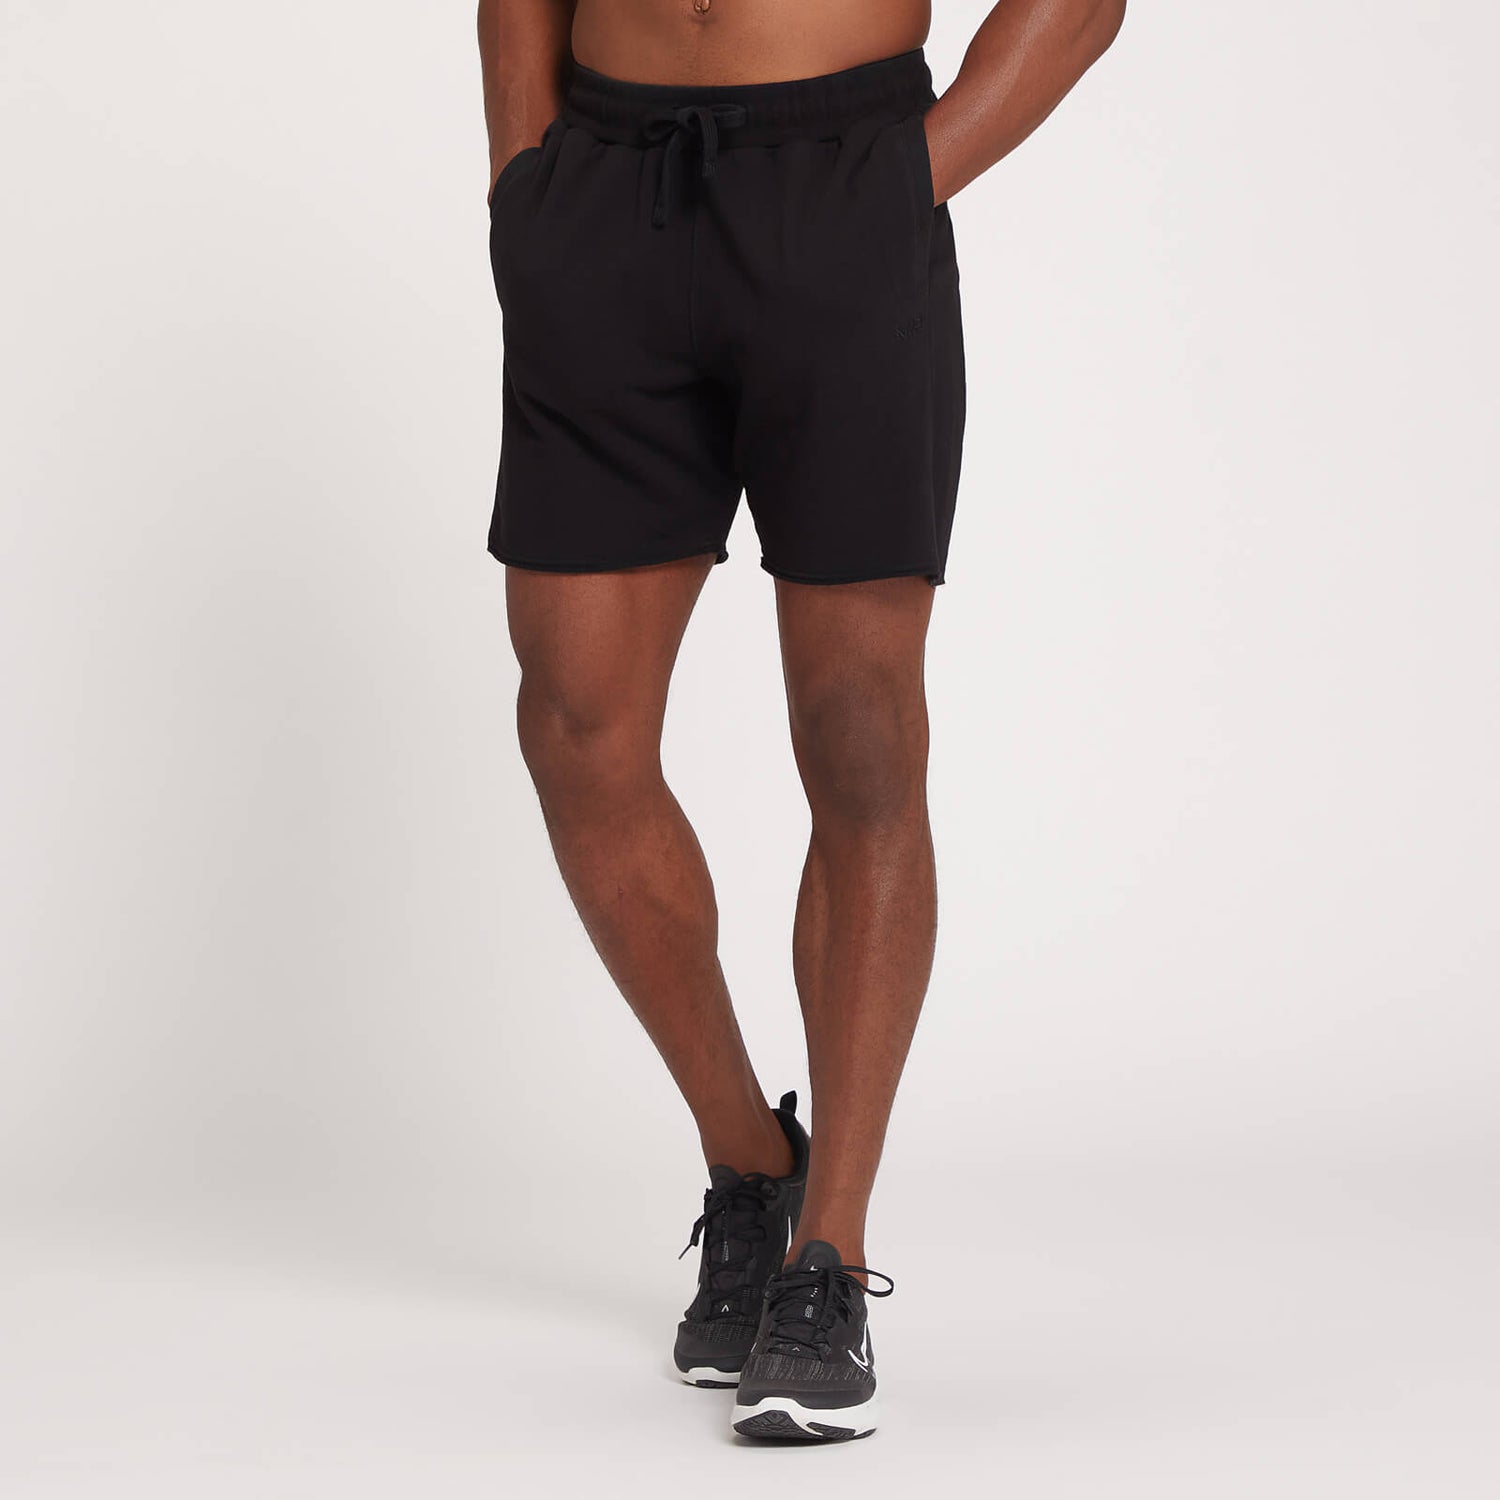 MP omejena izdaja moških kratkih hlač za trening – temno črna​ - XXS